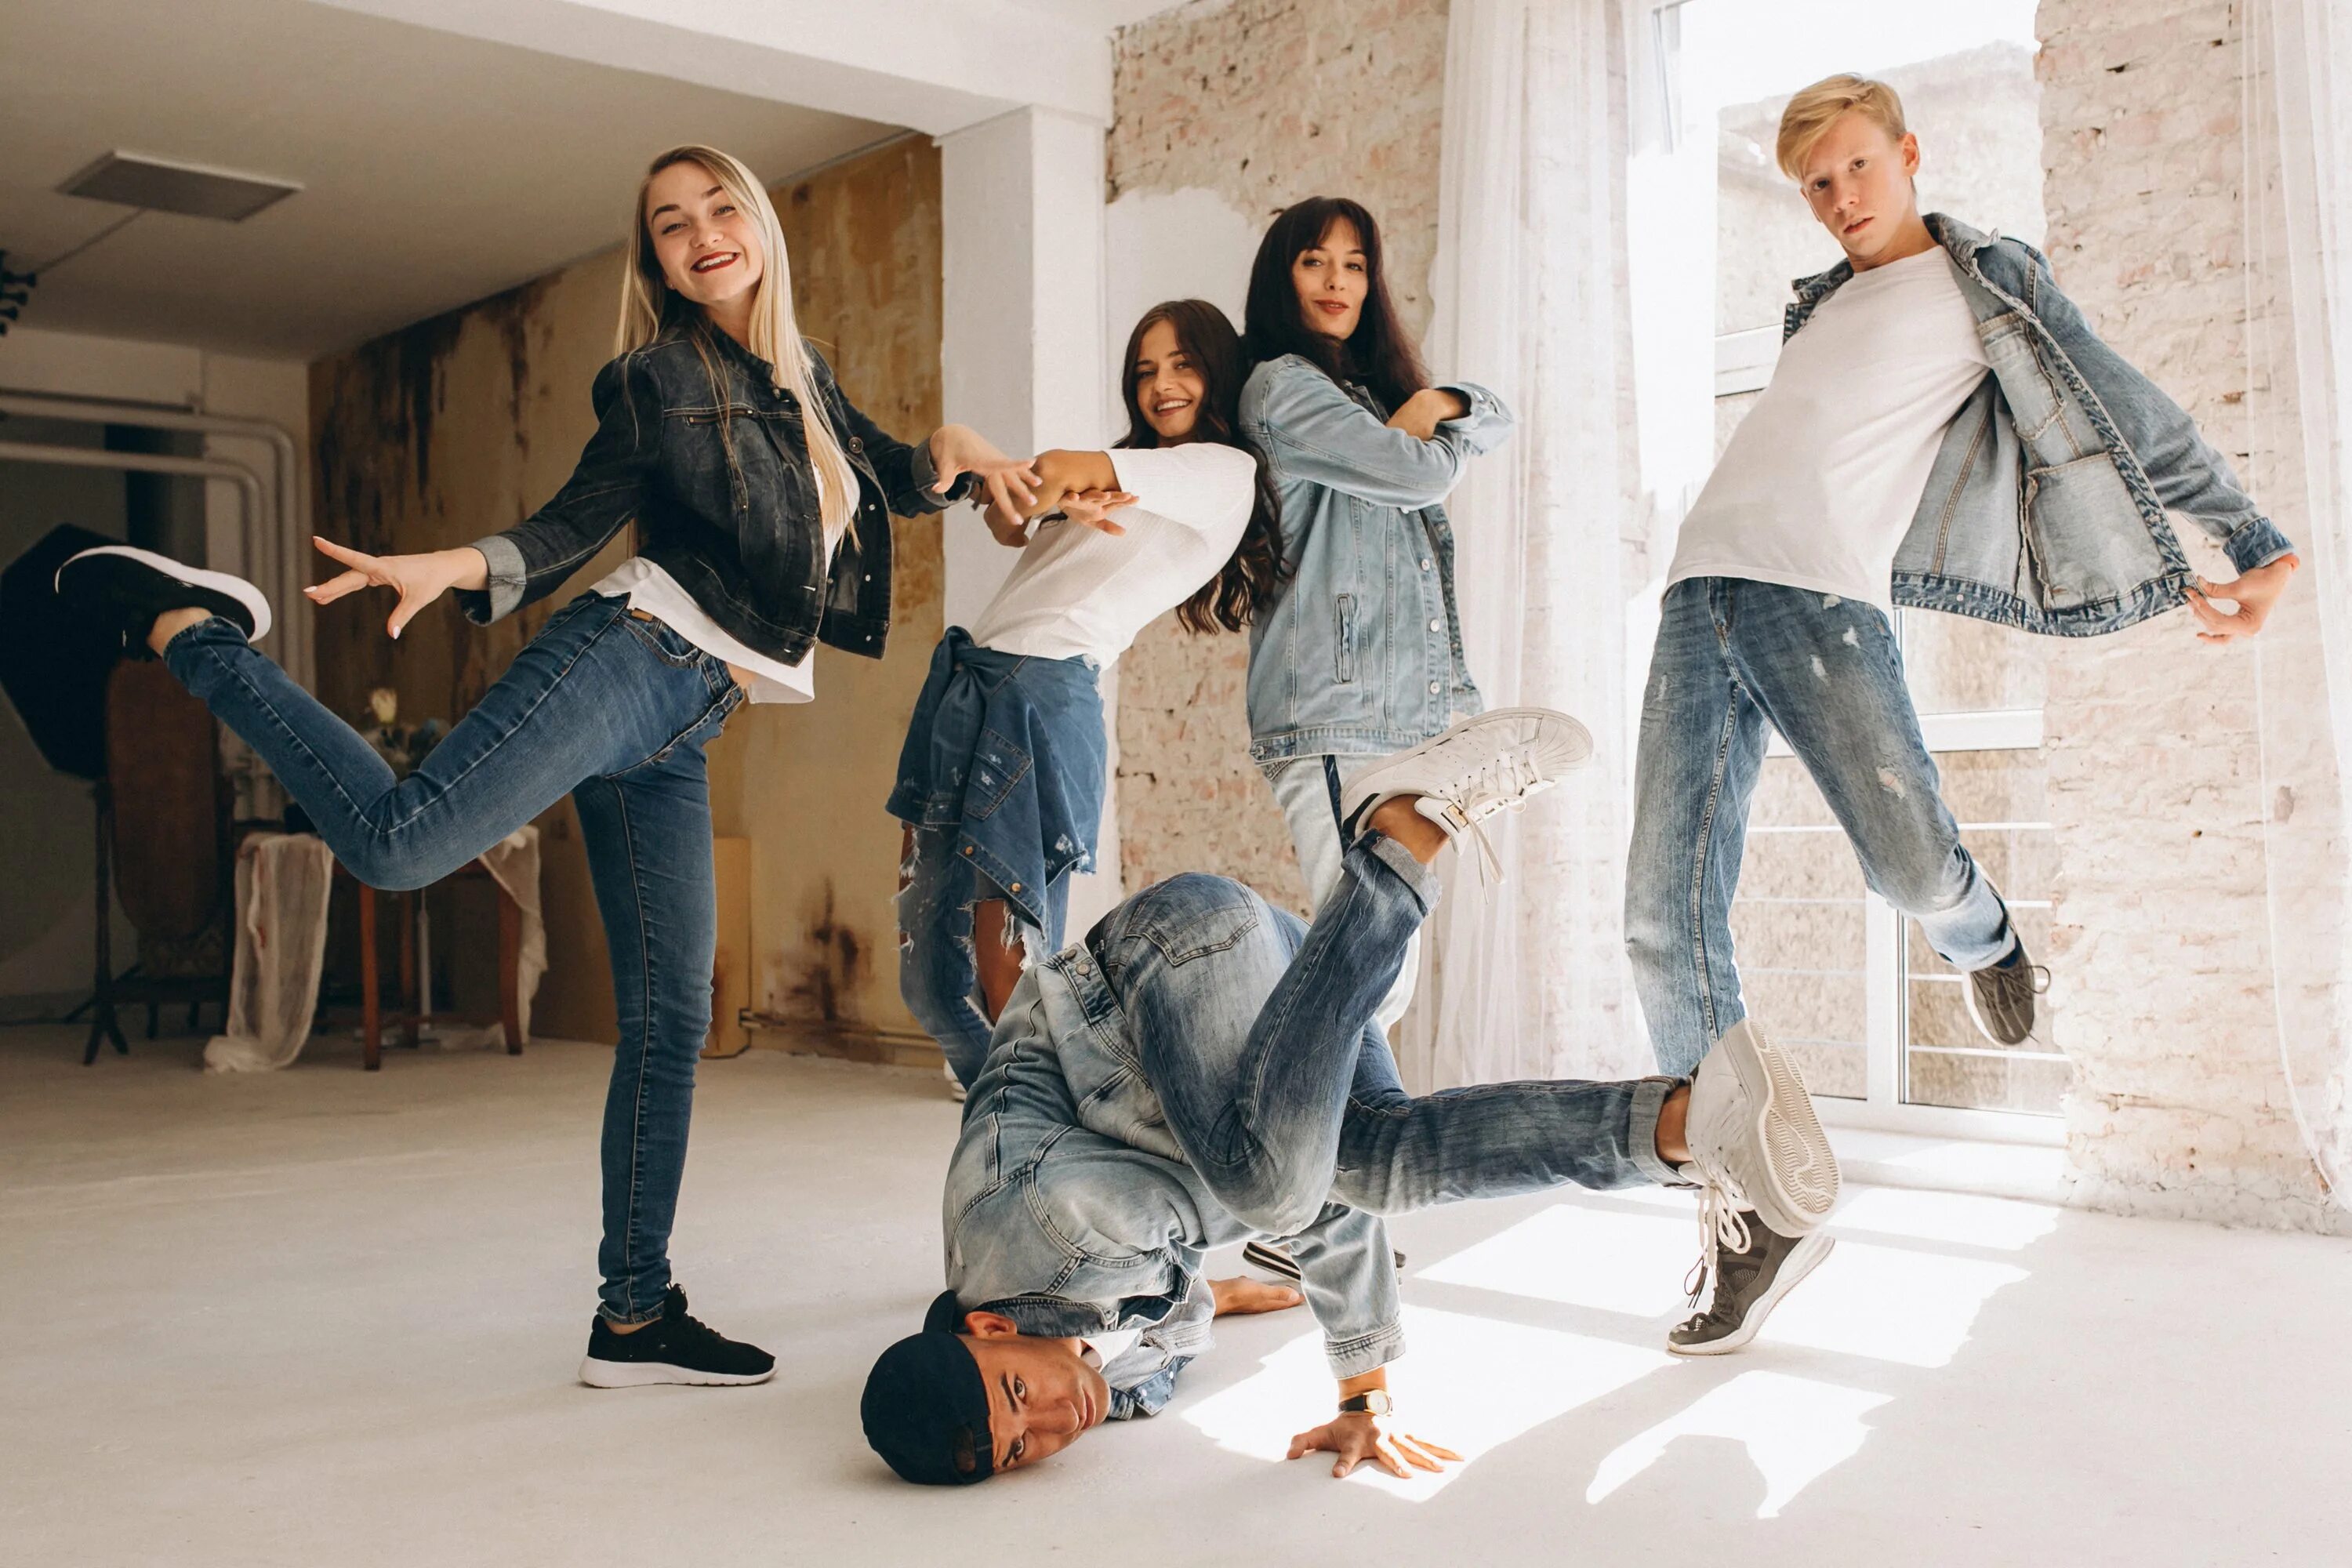 Современные танцы. Современные молодежные танцы. Молодежь в джинсах. Джинсовый стиль для групповой фотосессии.